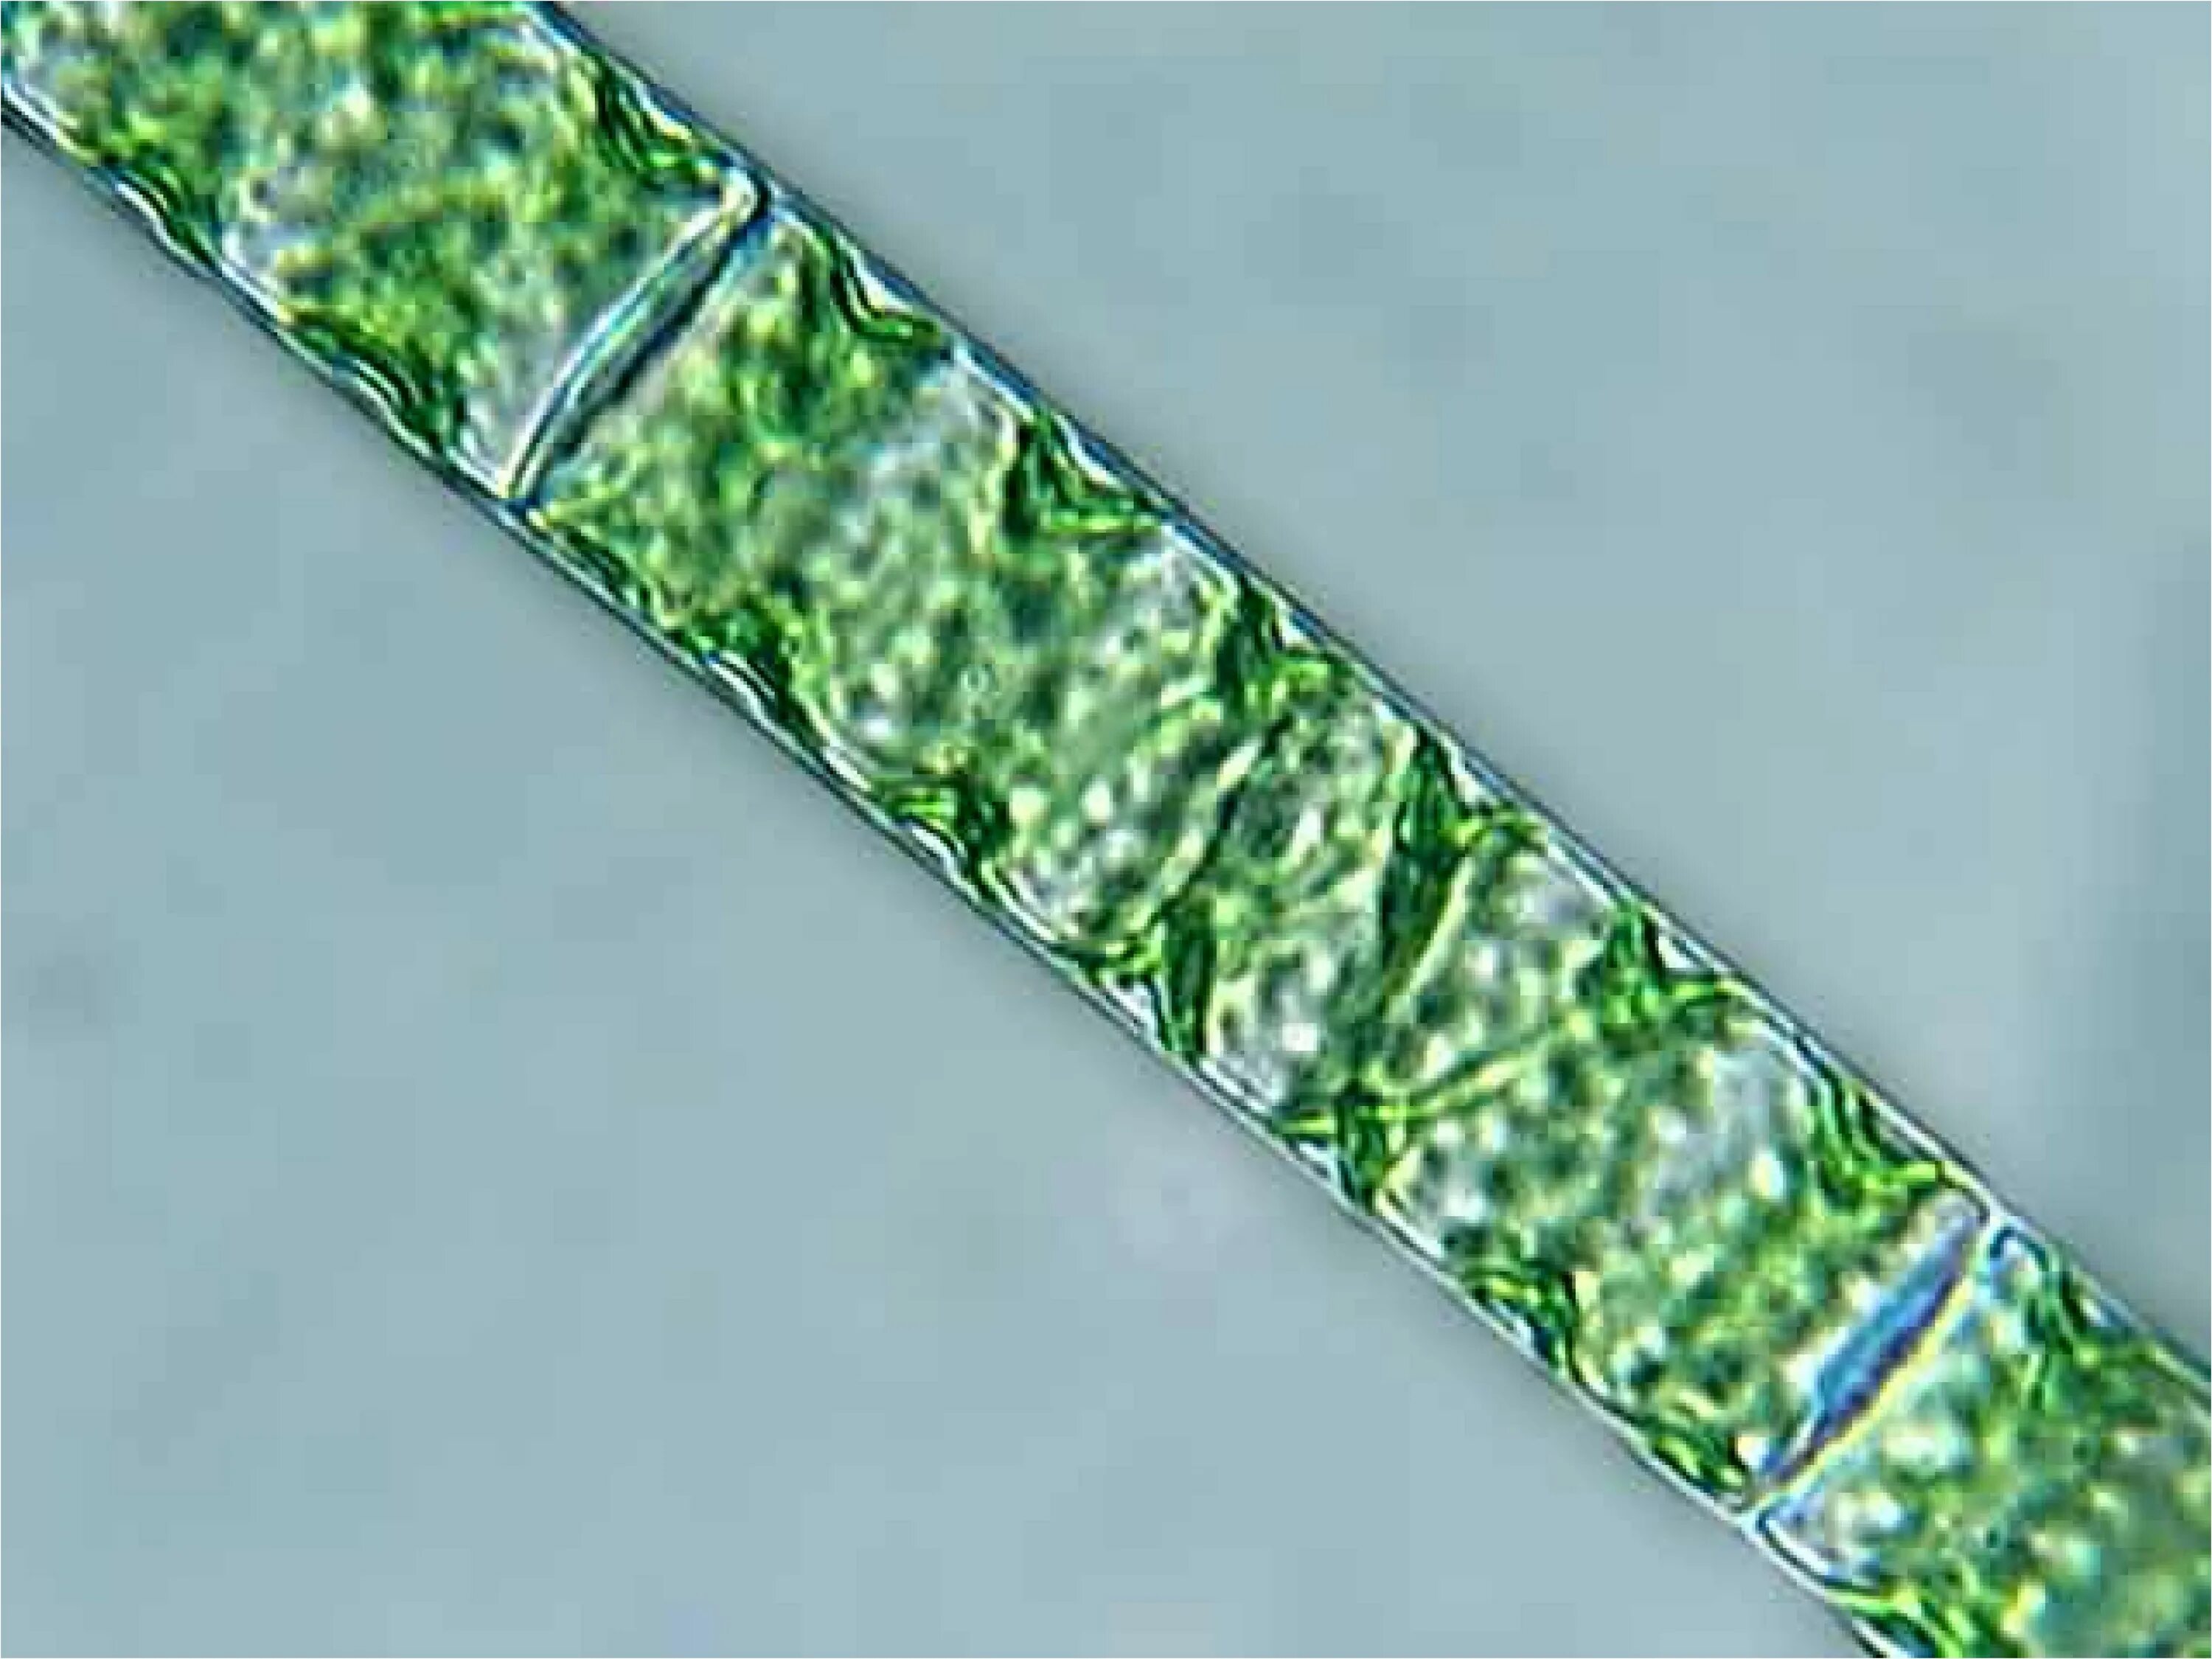 Спирогира нитчатая. Спирогира водоросль. Нитчатая водоросль спирогира. Спирогира зеленая нитчатая водоросль. Спирогира в микроскопе.